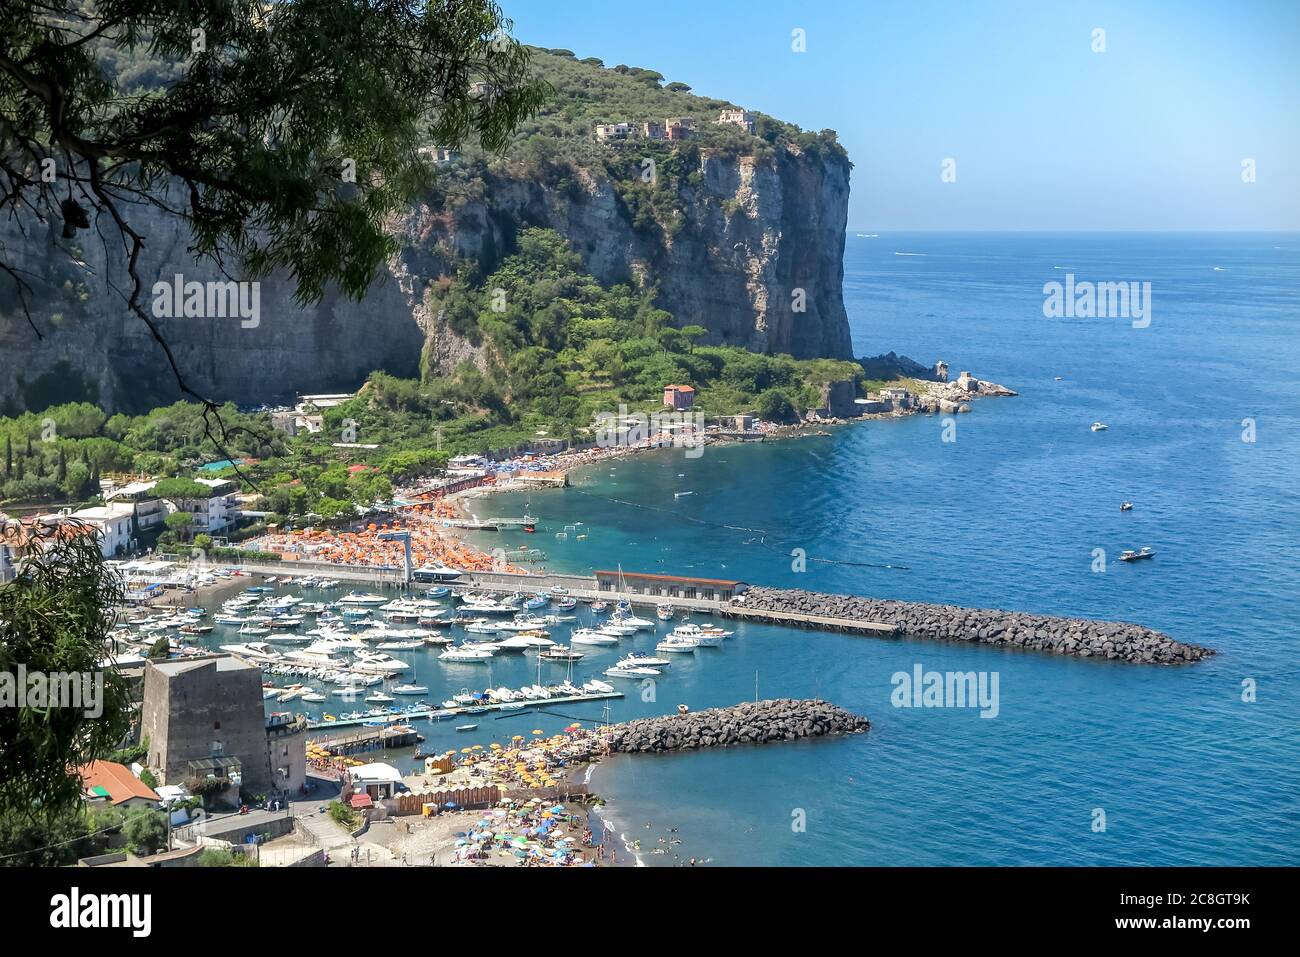 Große Klippe an den Ufern des Mittelmeers, mit Häusern, Stränden und Booten, Stockfoto